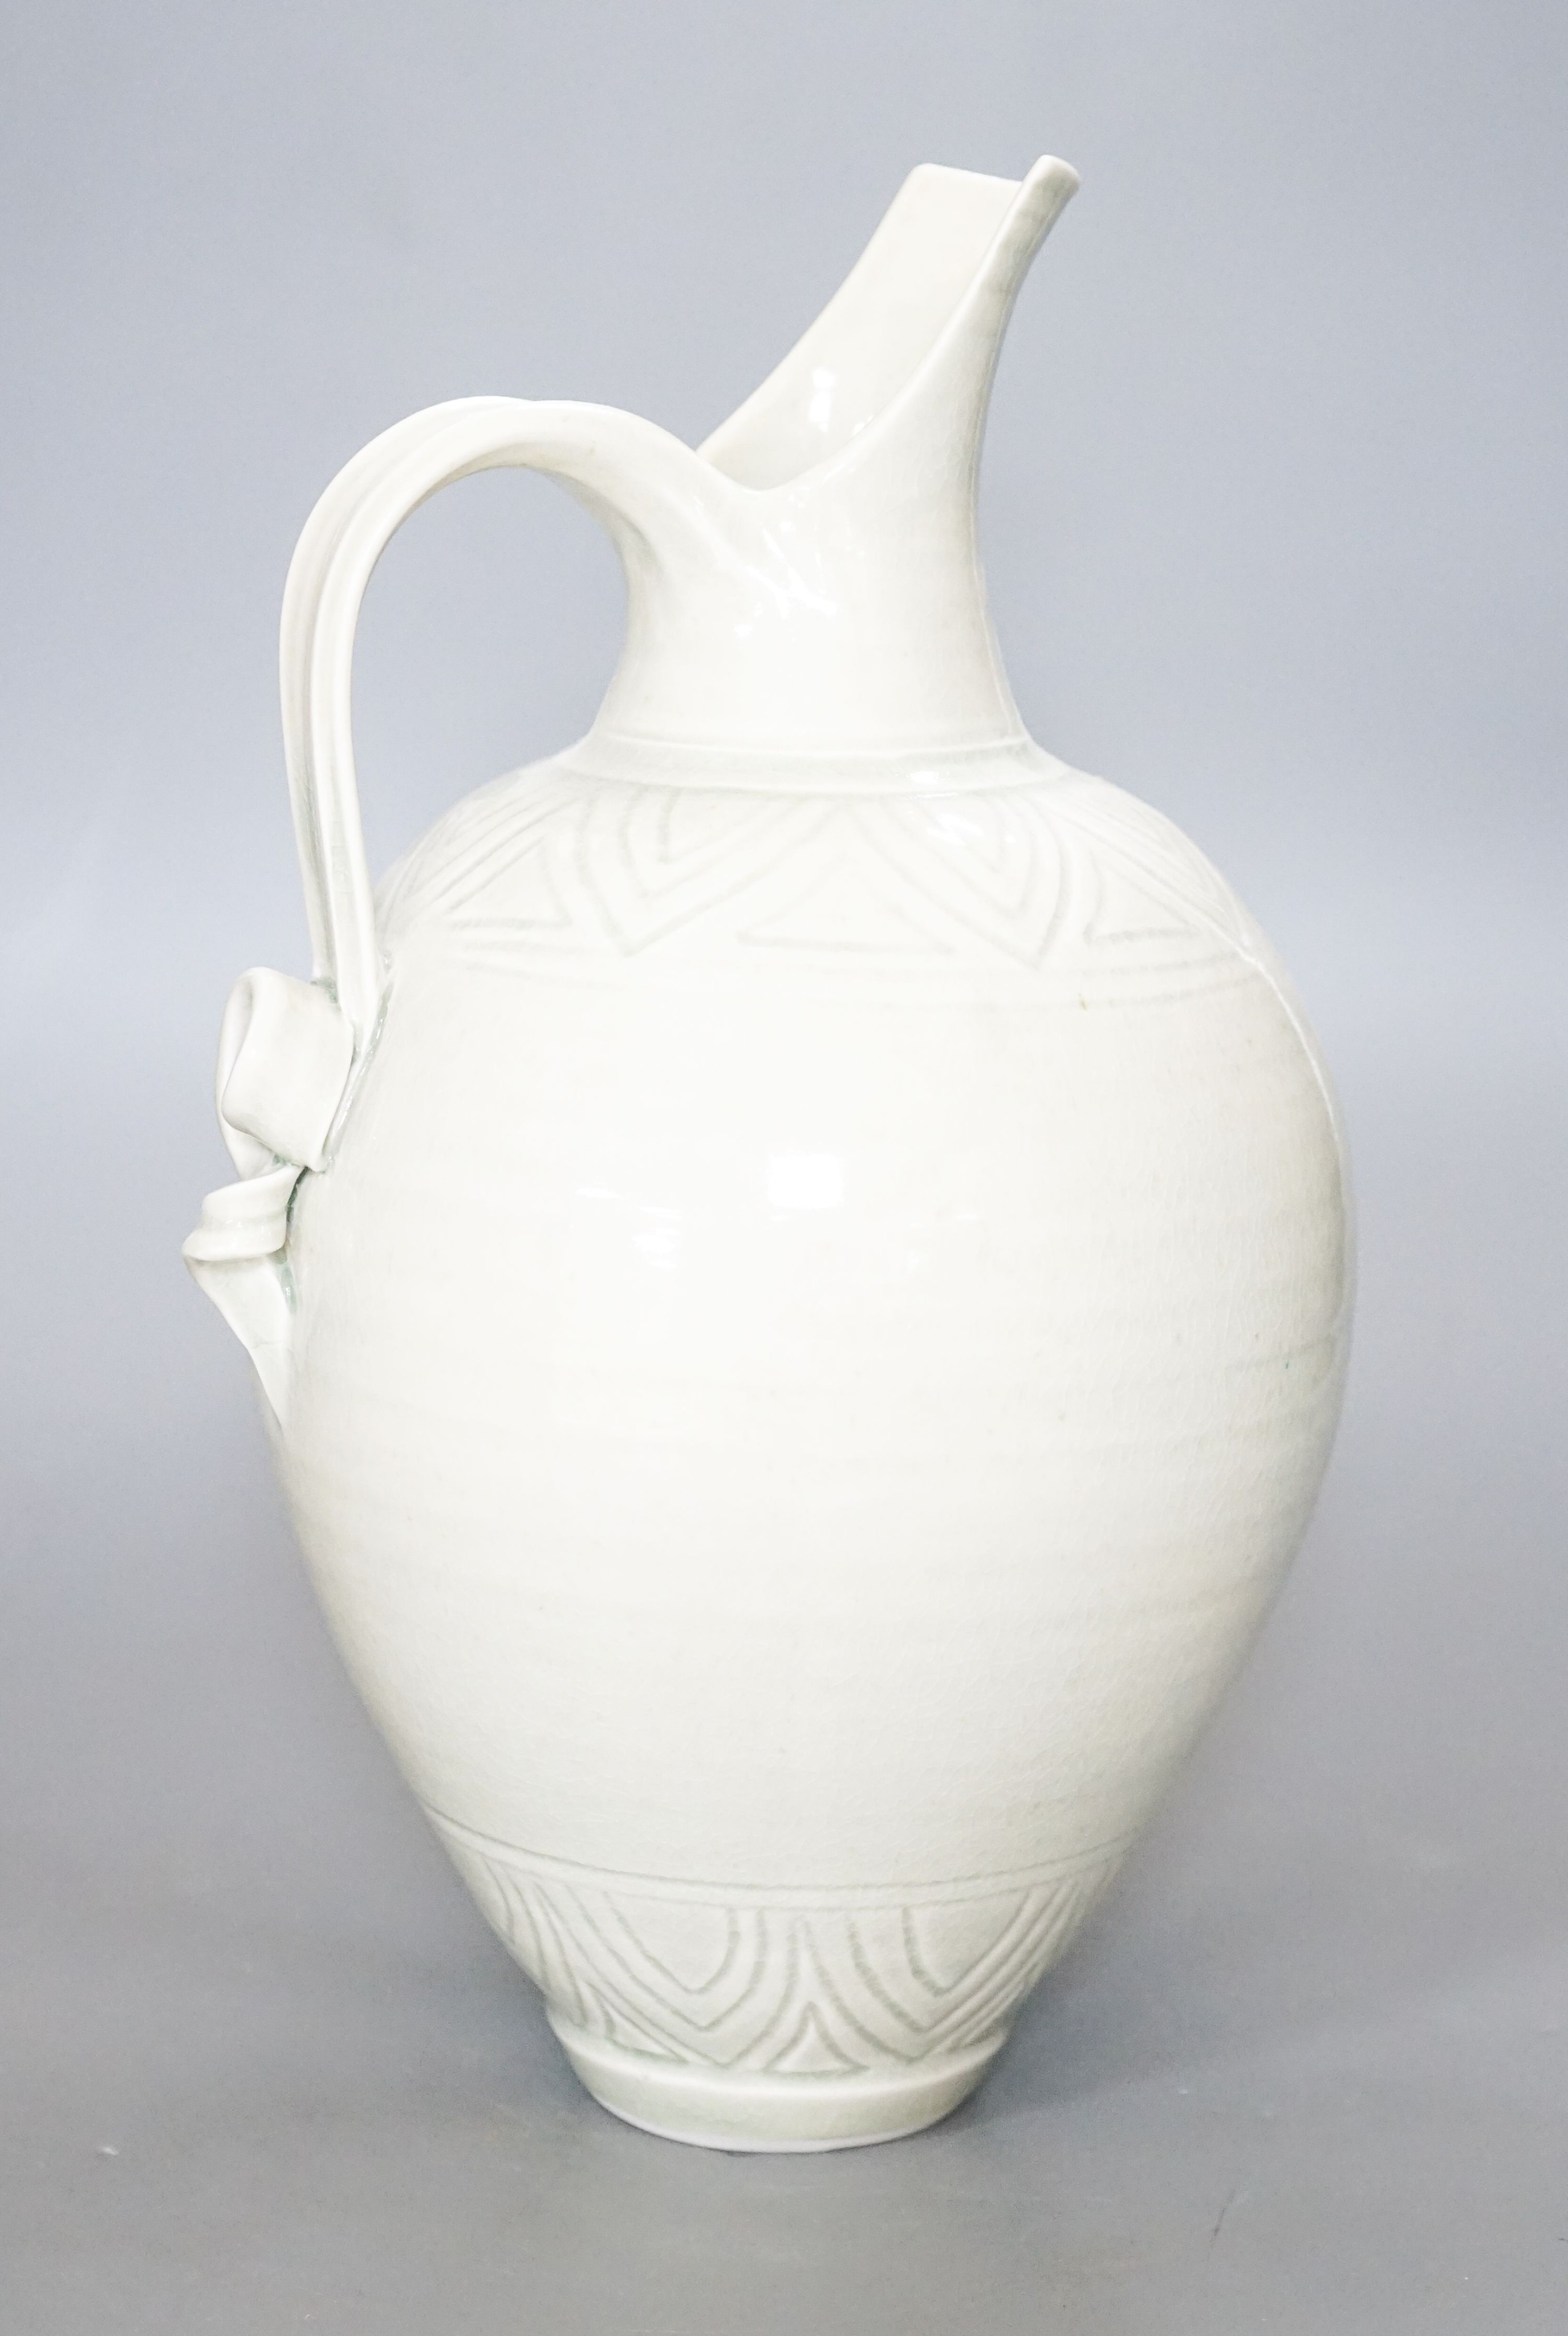 Bridget Drakeford (b.1946), a celadon glazed porcelain jug 30cm